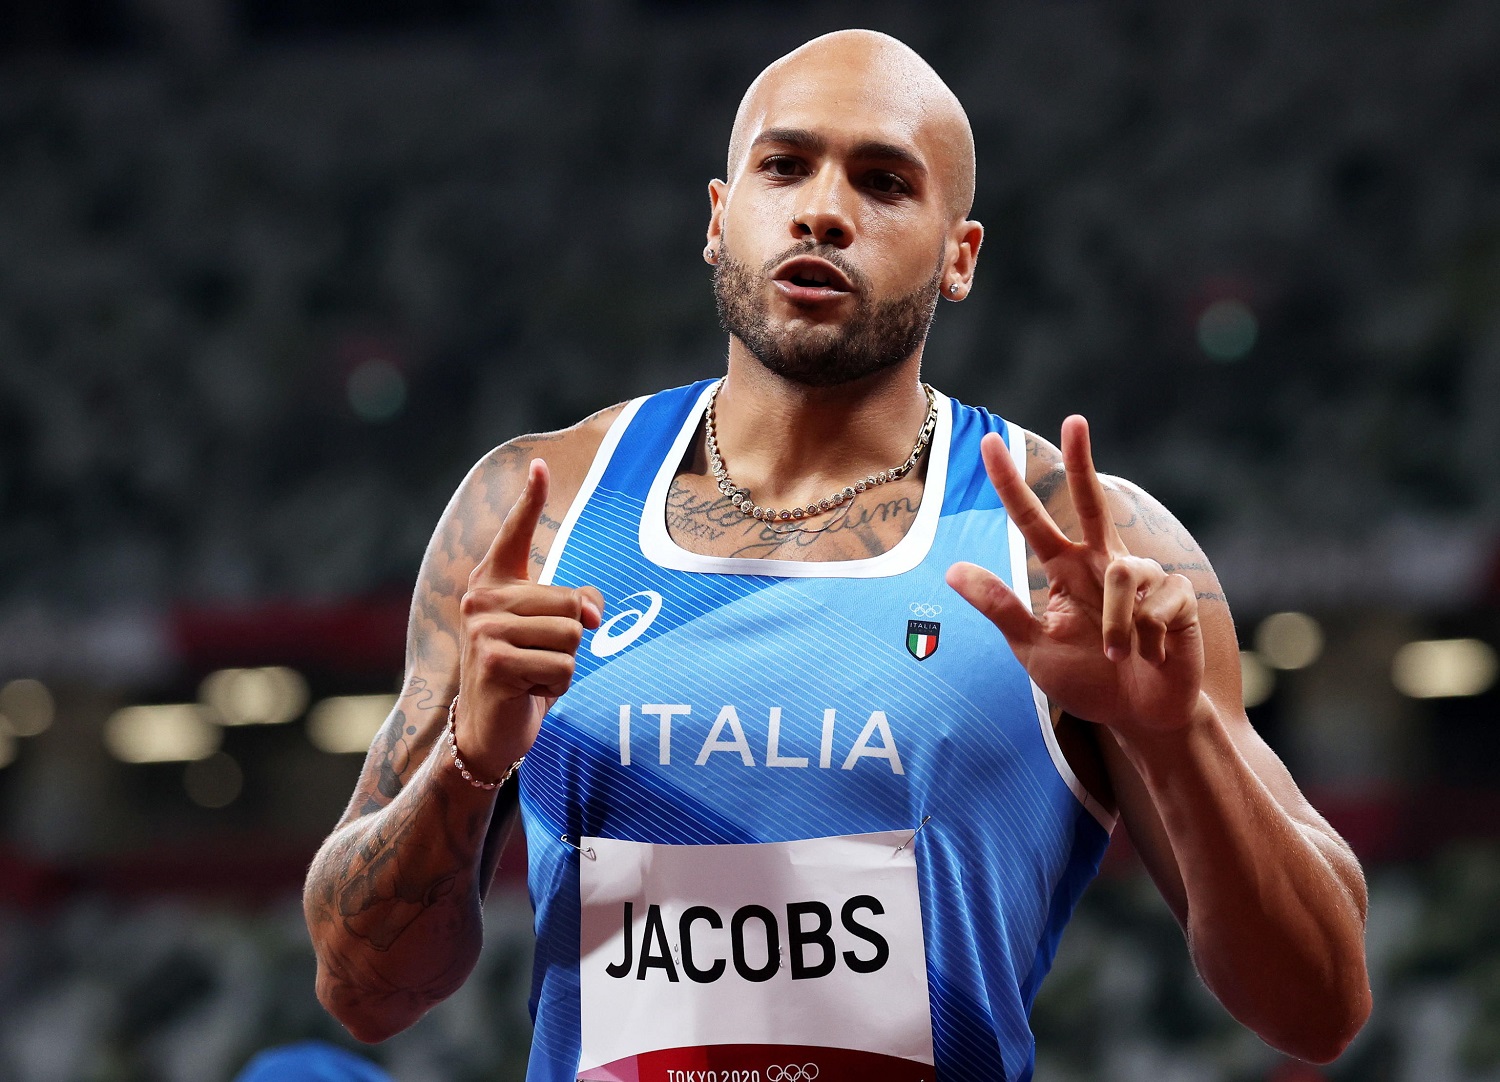 Europei di Monaco, Marcell Jacobs è tornato: vince la finale dei 100 metri